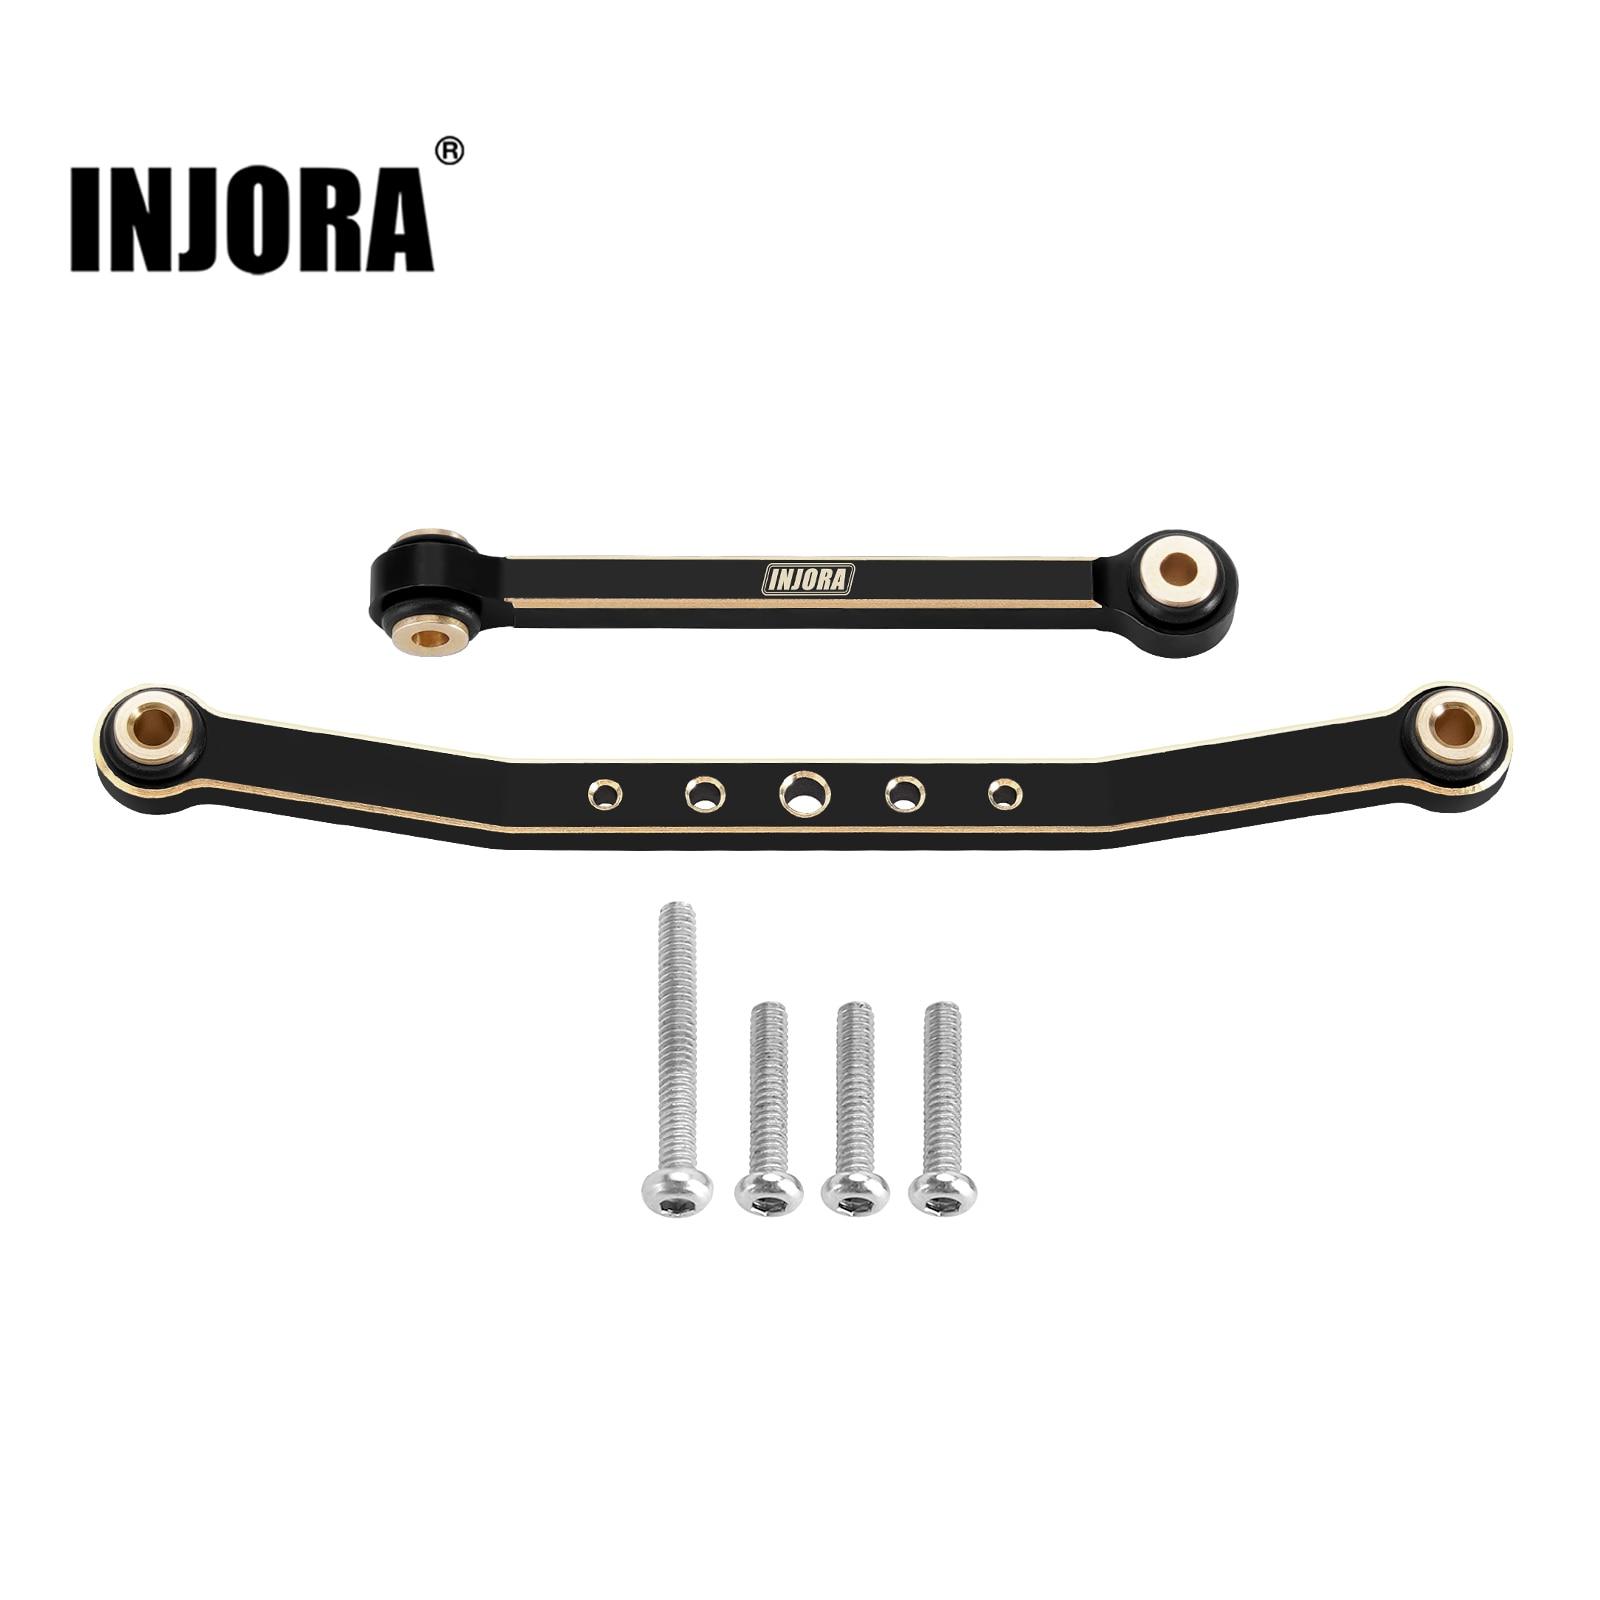 INJORA-Black-Coating-Brass-Steering-Links-for-1-24-RC-Crawler-FMS-FCX24-Upgrade-FCX24-03BK.jpg